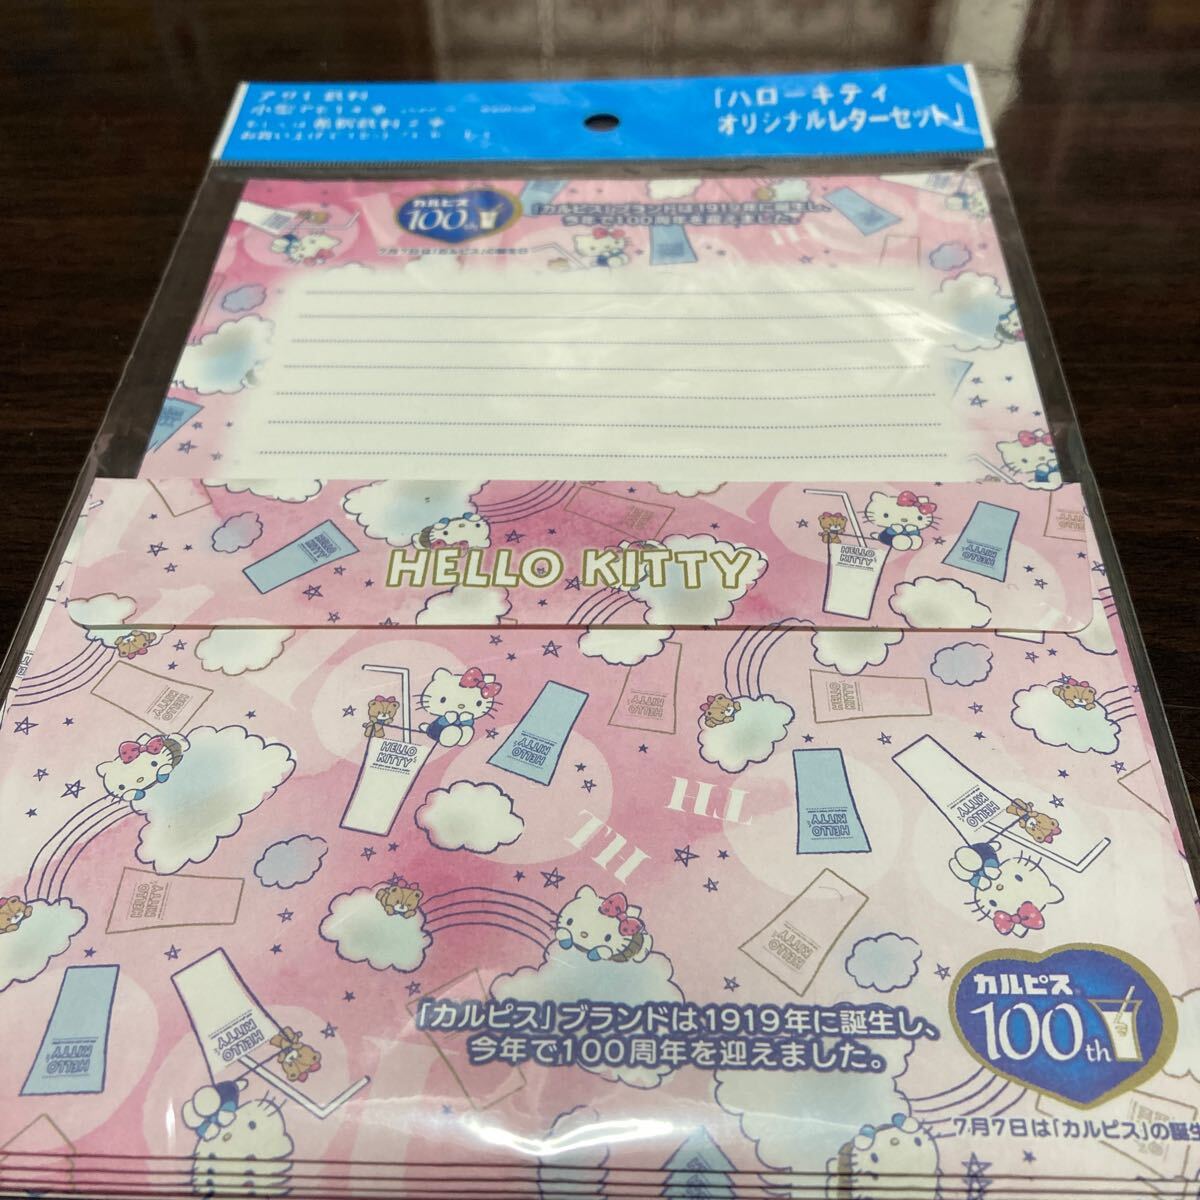 Hello Kittyオリジナルレターセット 未使用品の画像1